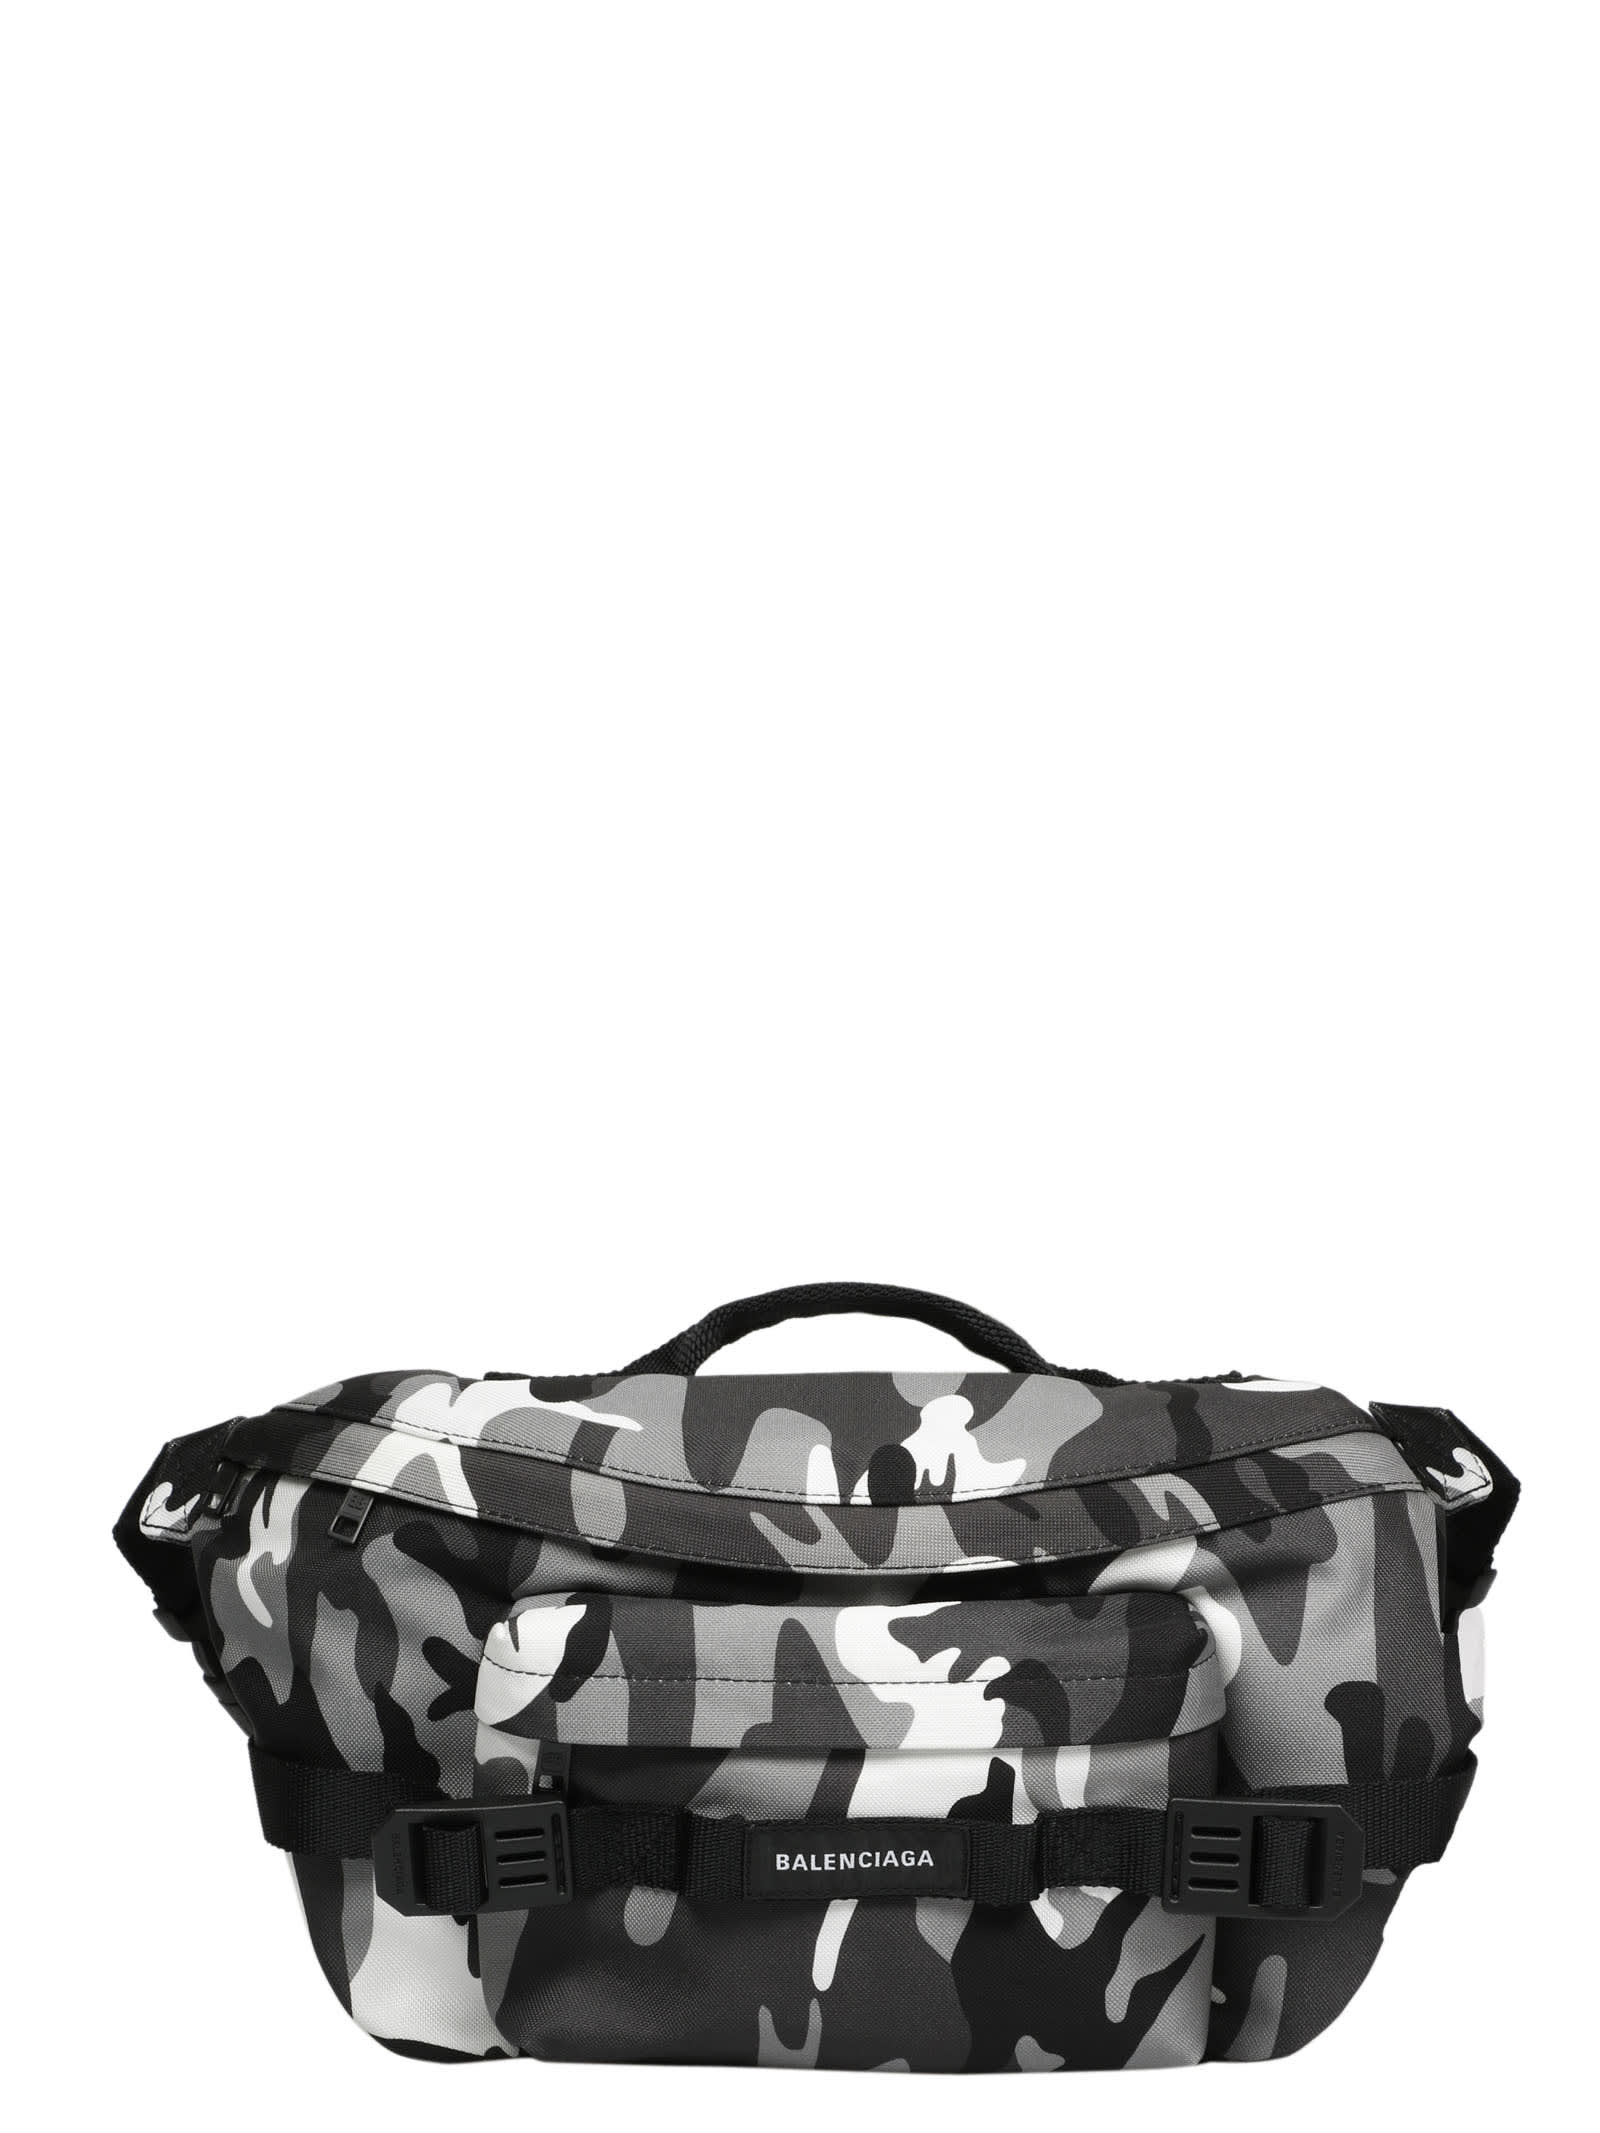 Balenciaga Army Large Beltbag